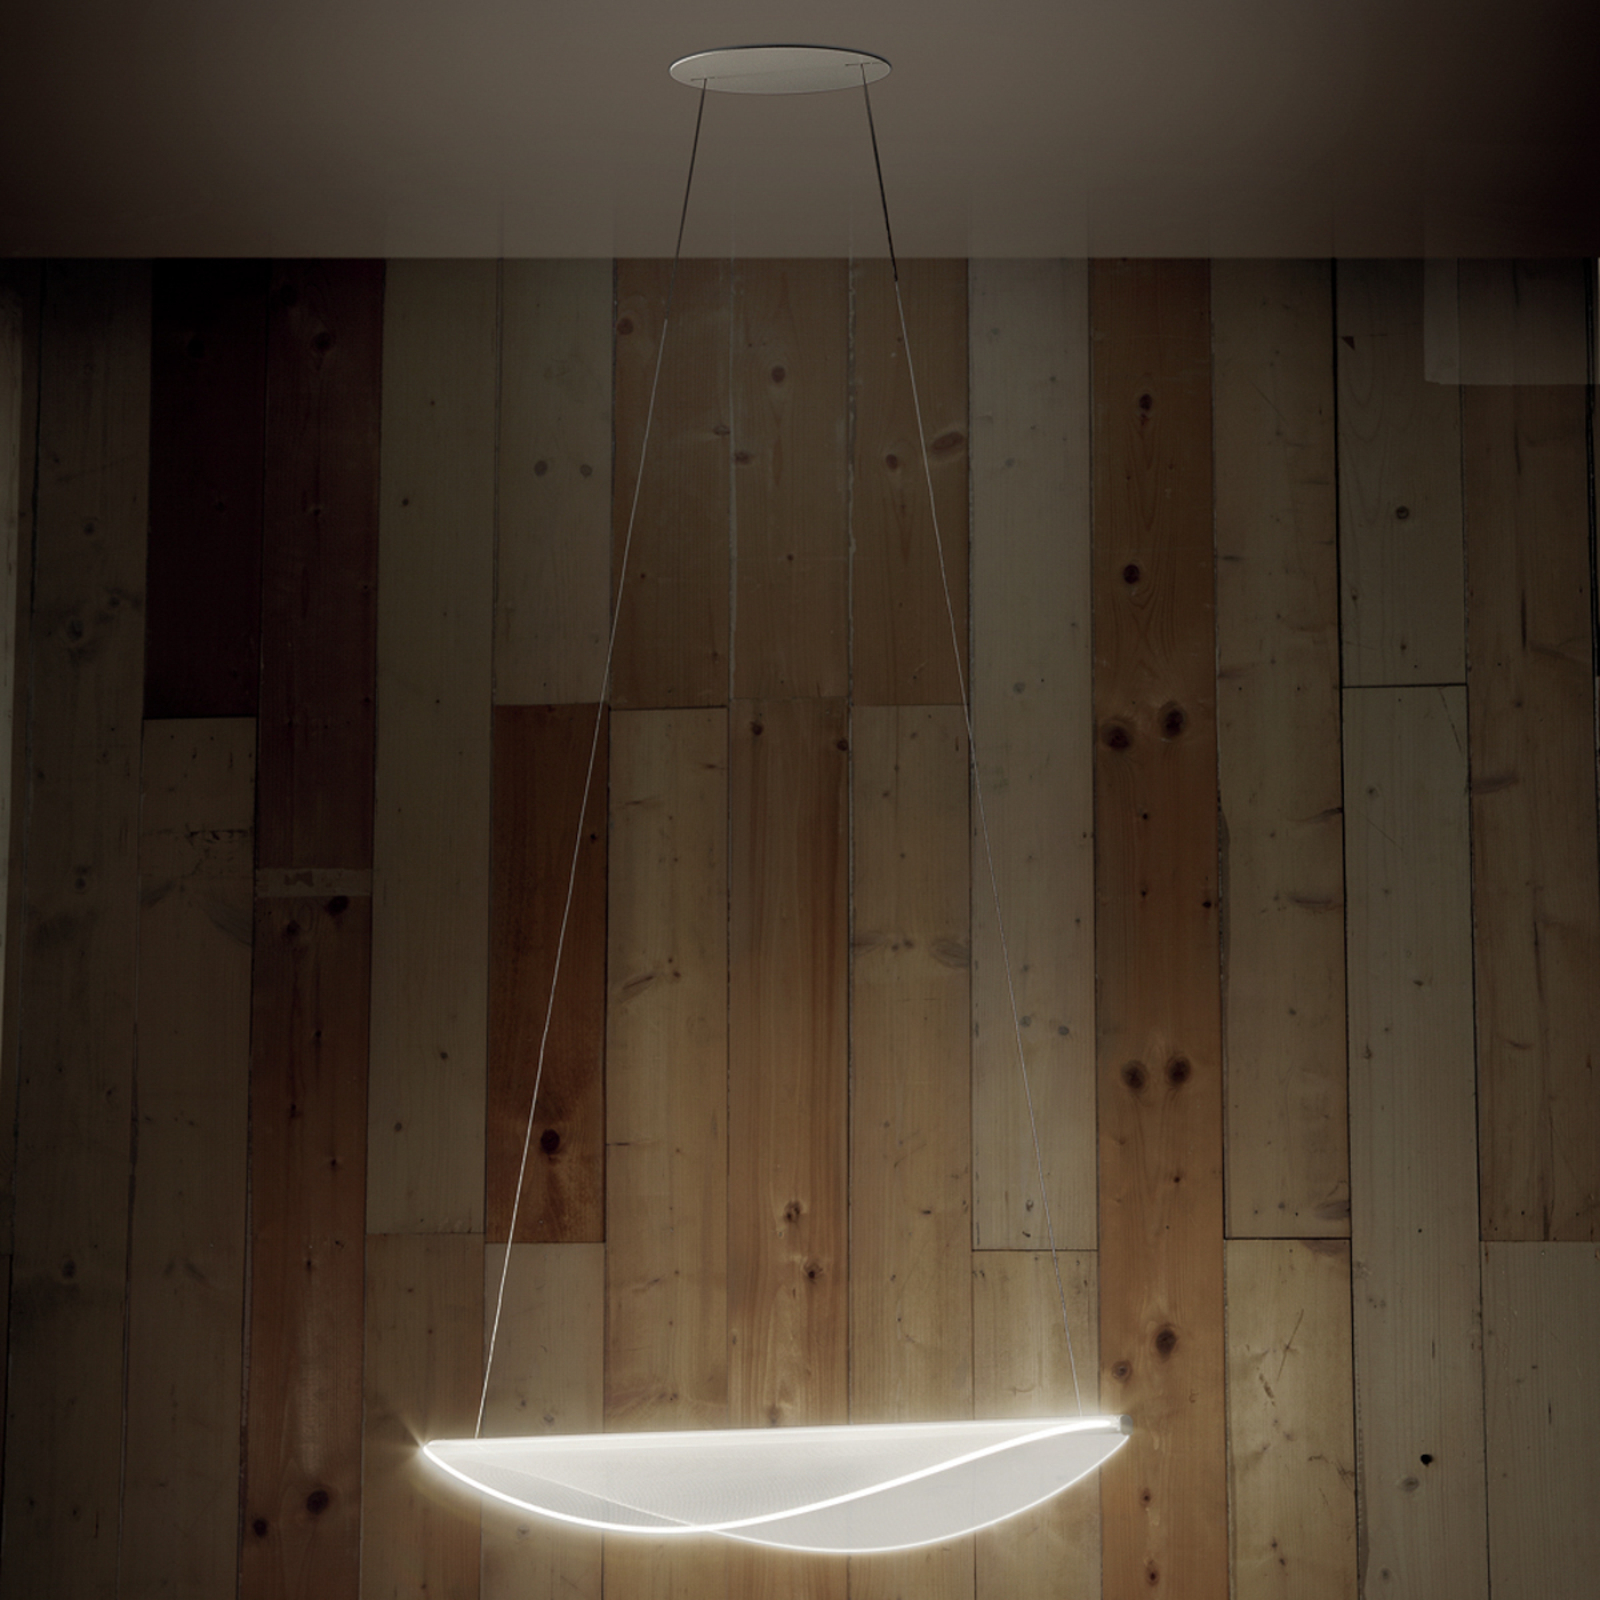 Stilnovo Diphy LED viseča svetilka bela dolžina 53,6 cm